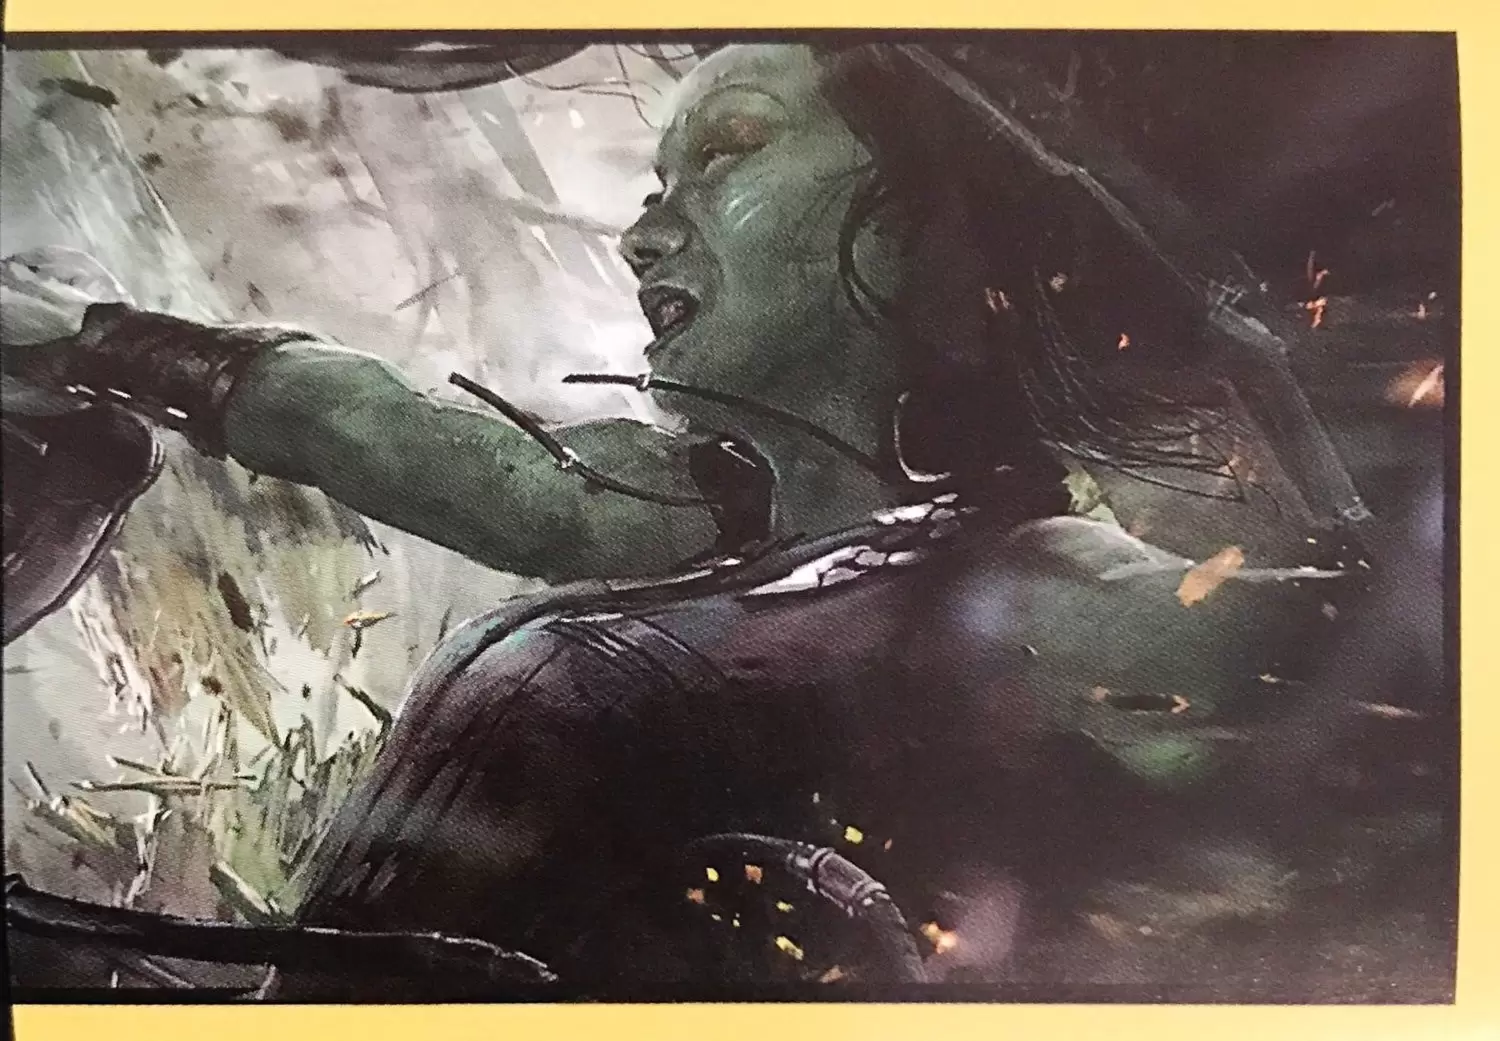 Les gardiens de la Galaxie vol.2 - Gamora